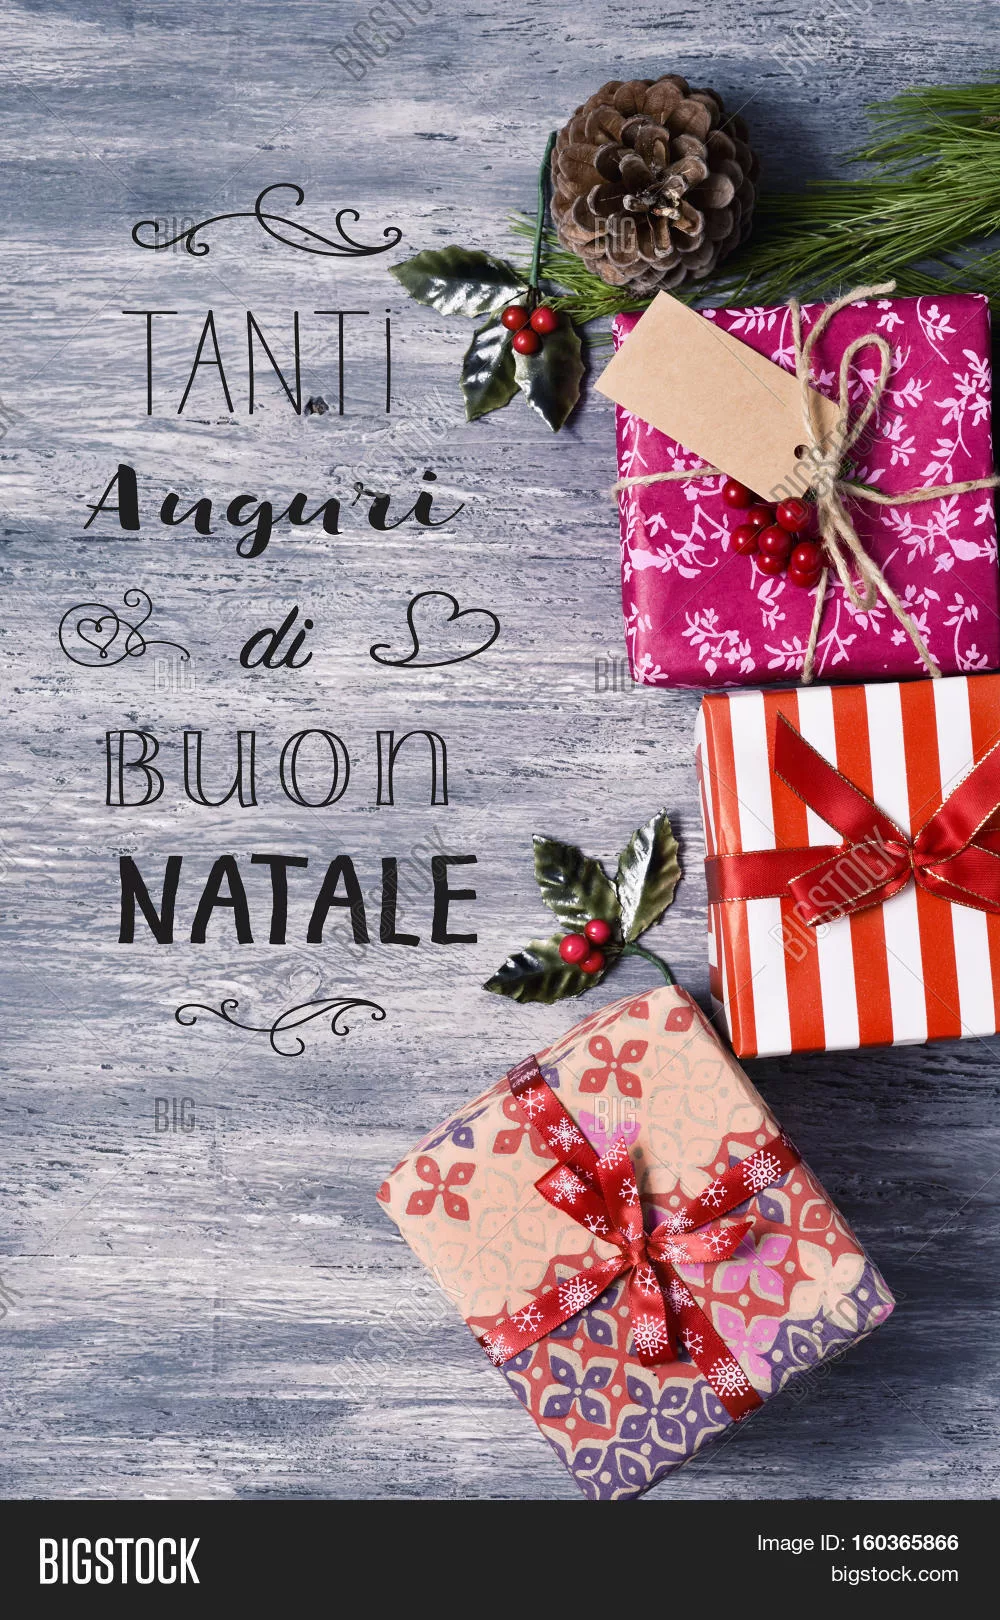 Фото Поздравления с Рождеством на итальянском языке #30